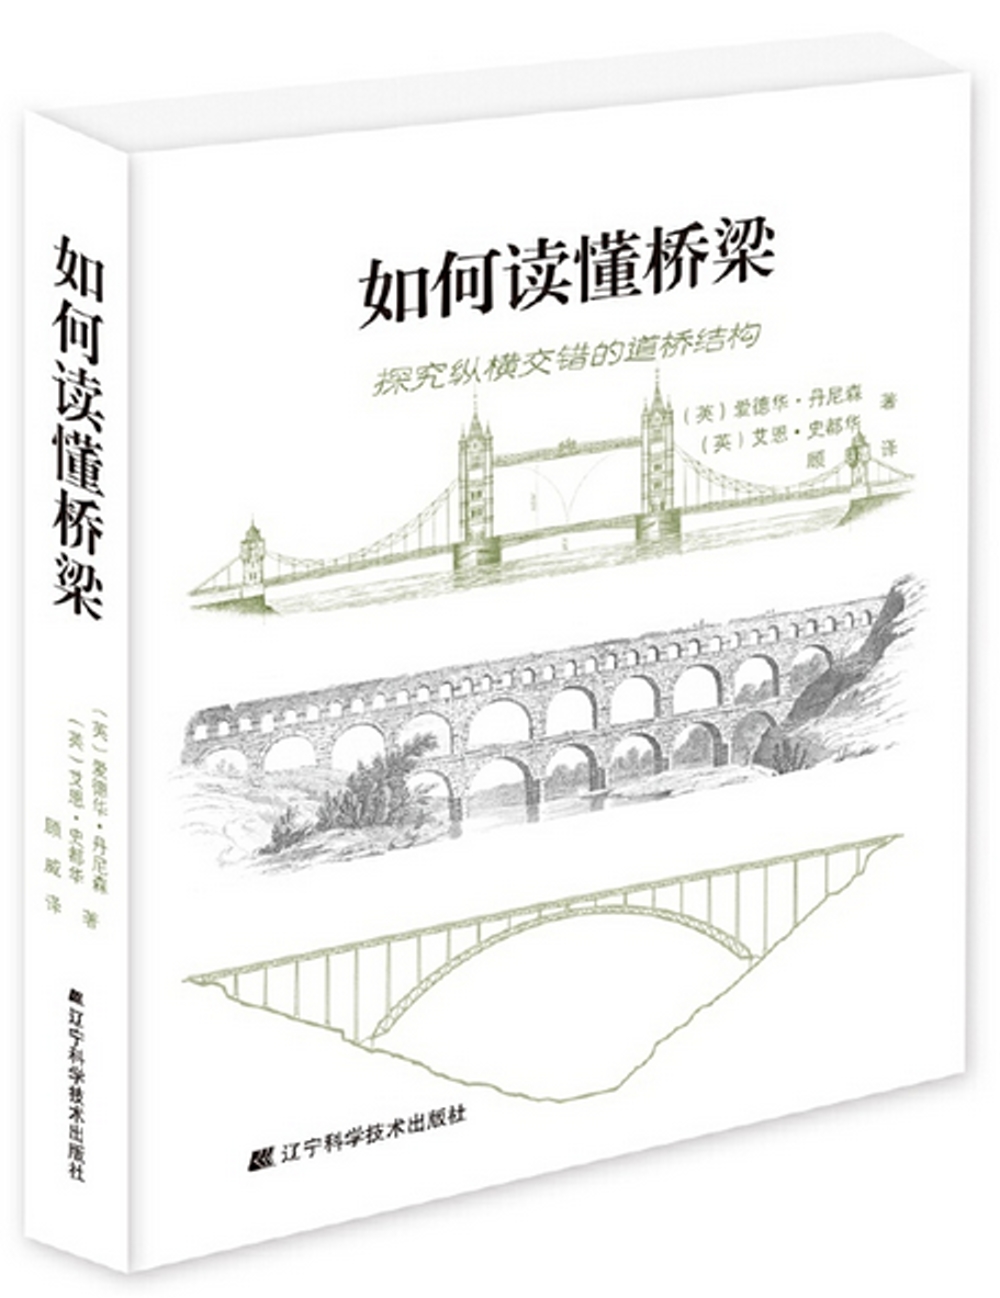 如何讀懂橋樑：探究縱橫交錯的道橋結構